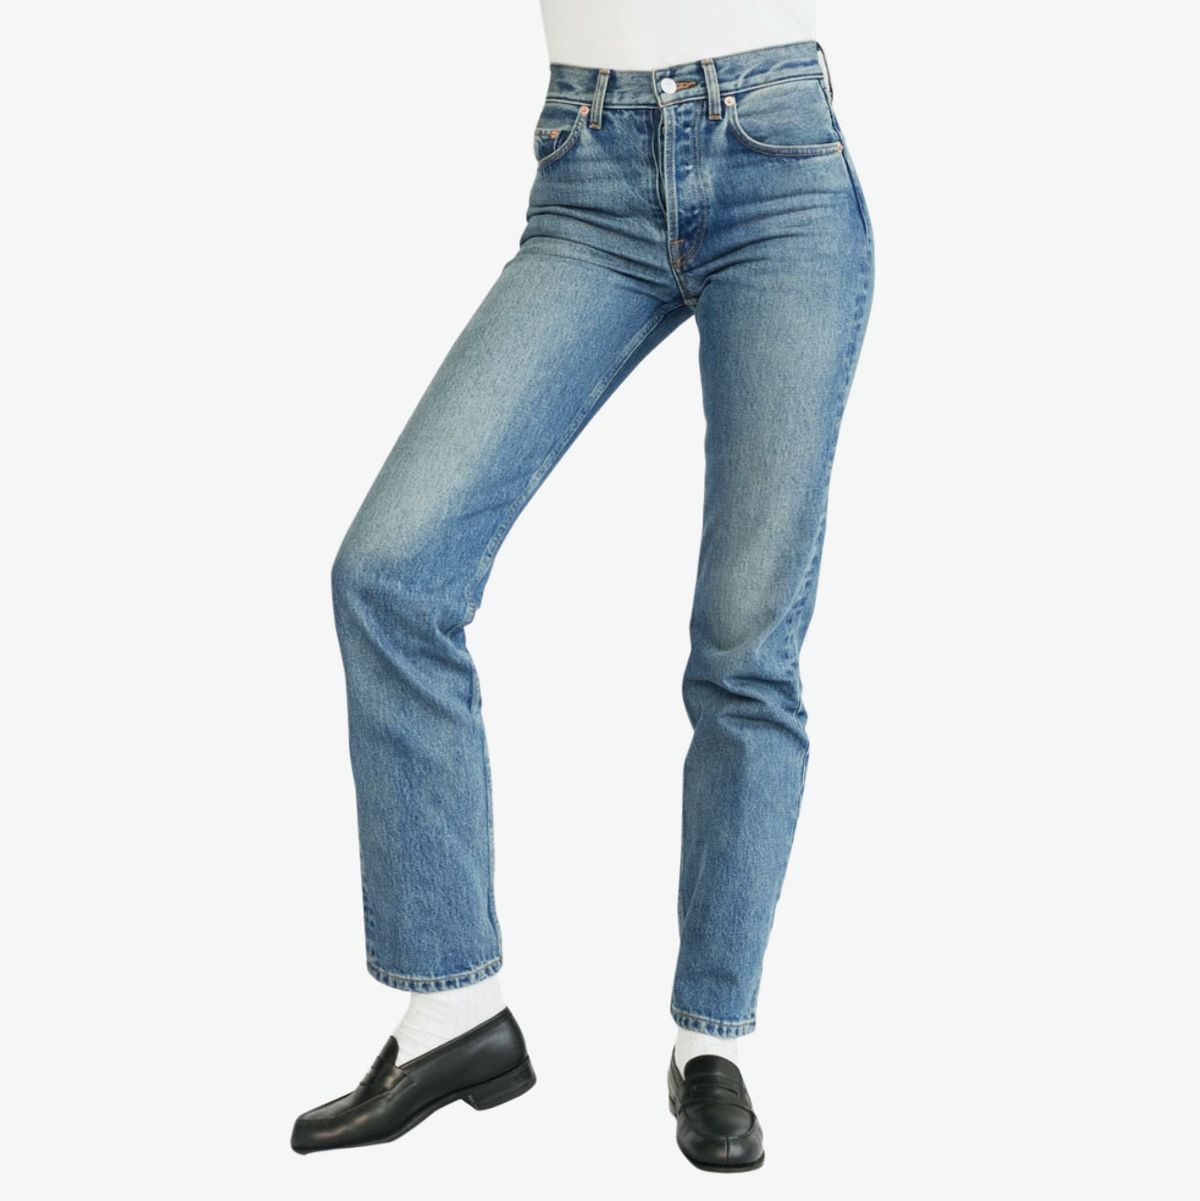 best women's jeans brands 2019